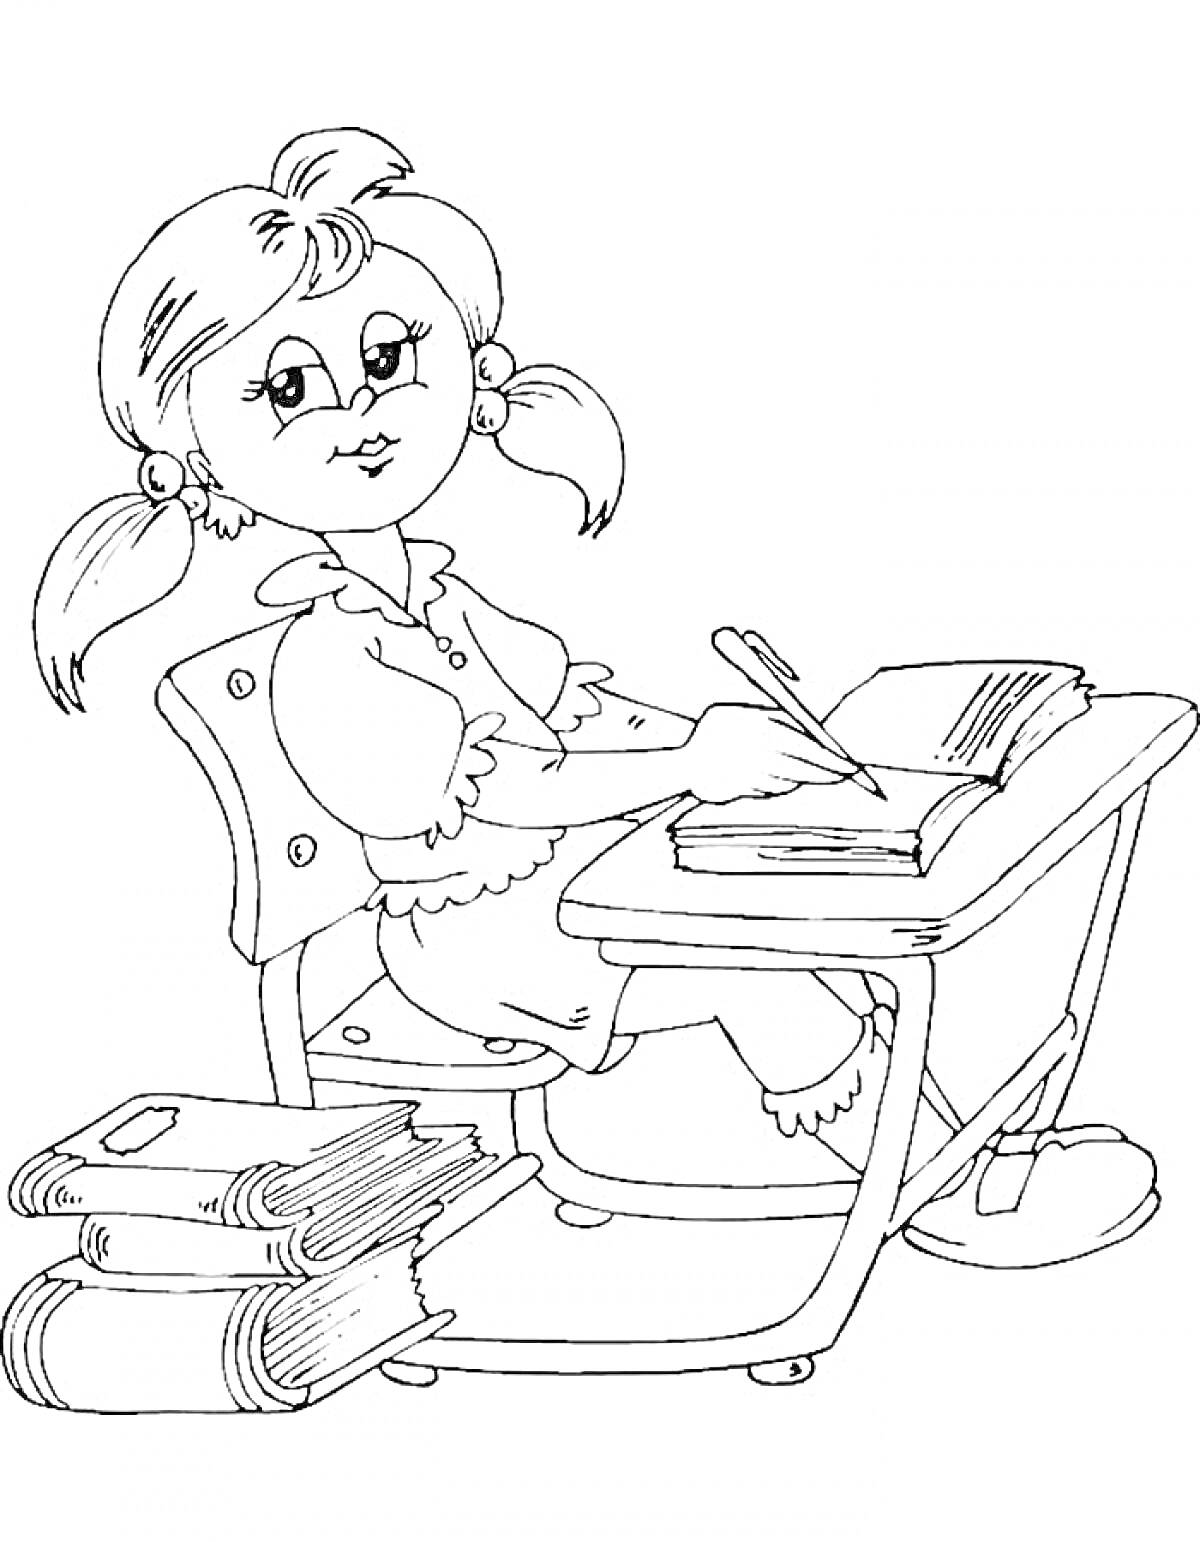 Раскраска девочка, сидящая за школьной партой, пишет в тетради, со стопкой книг под партой